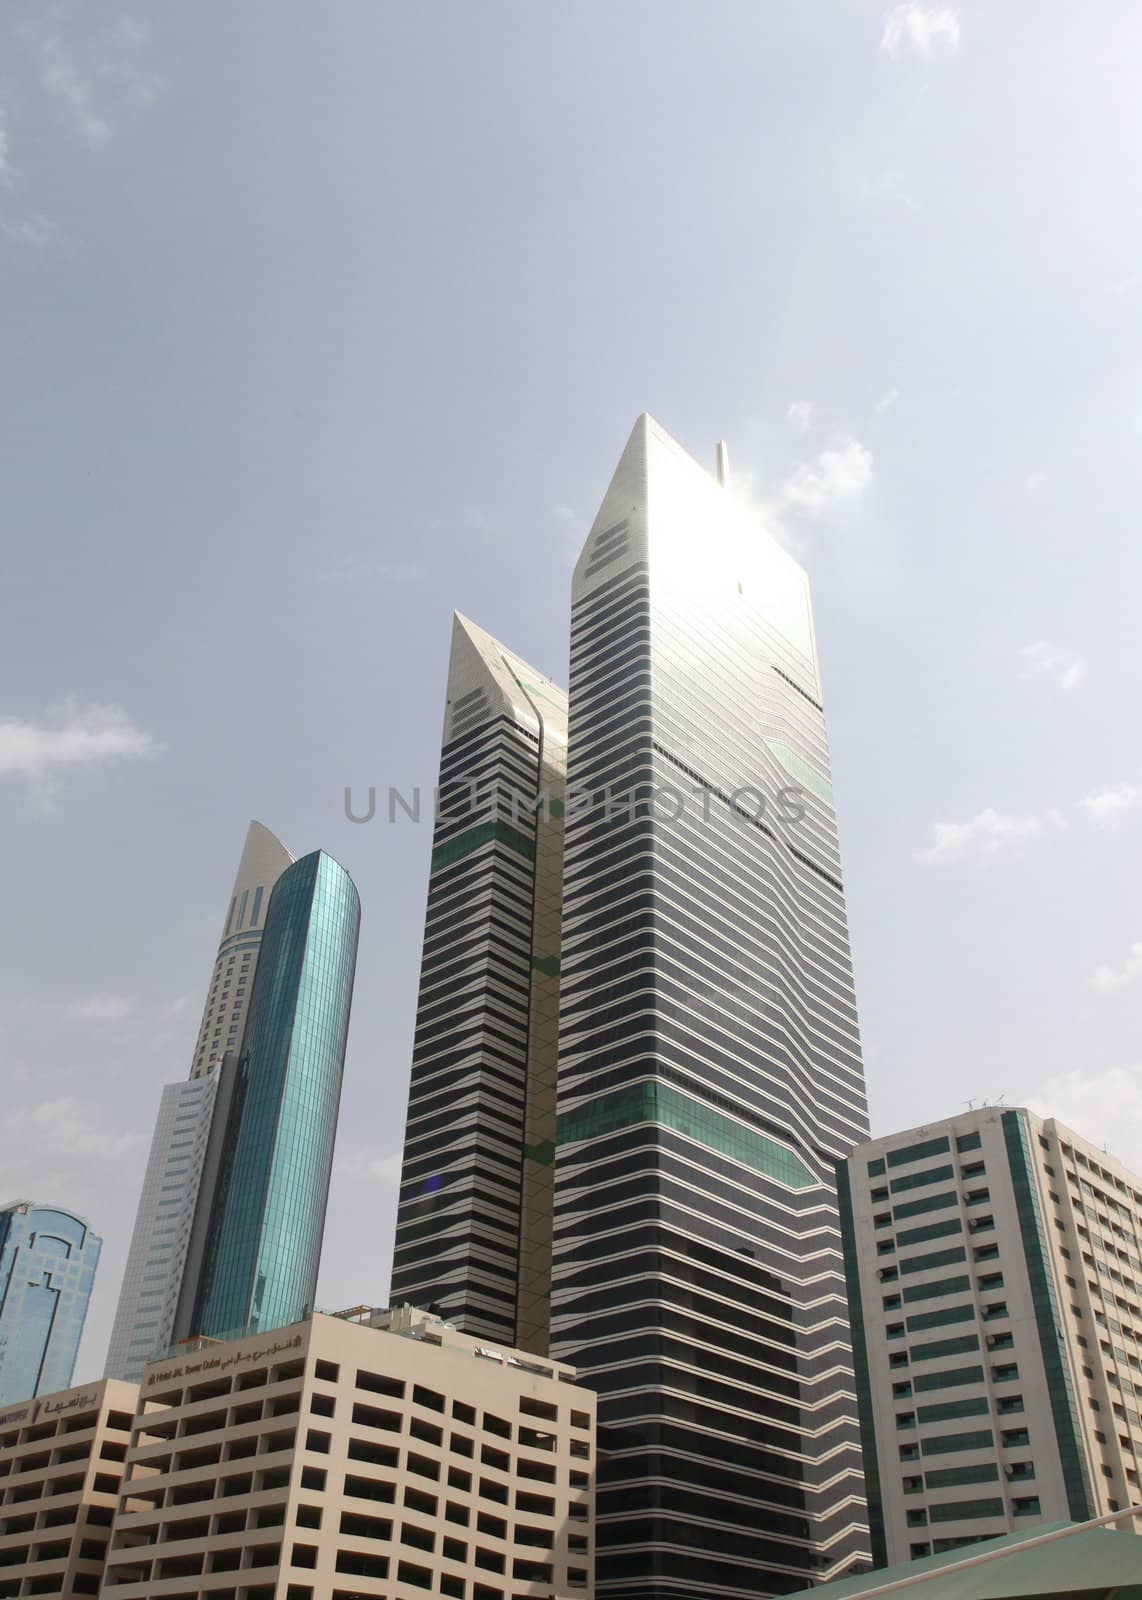 DUBAI, UAE - 2/11/2011: Tall Futuristic Skyscrapers In Dubai by nfx702